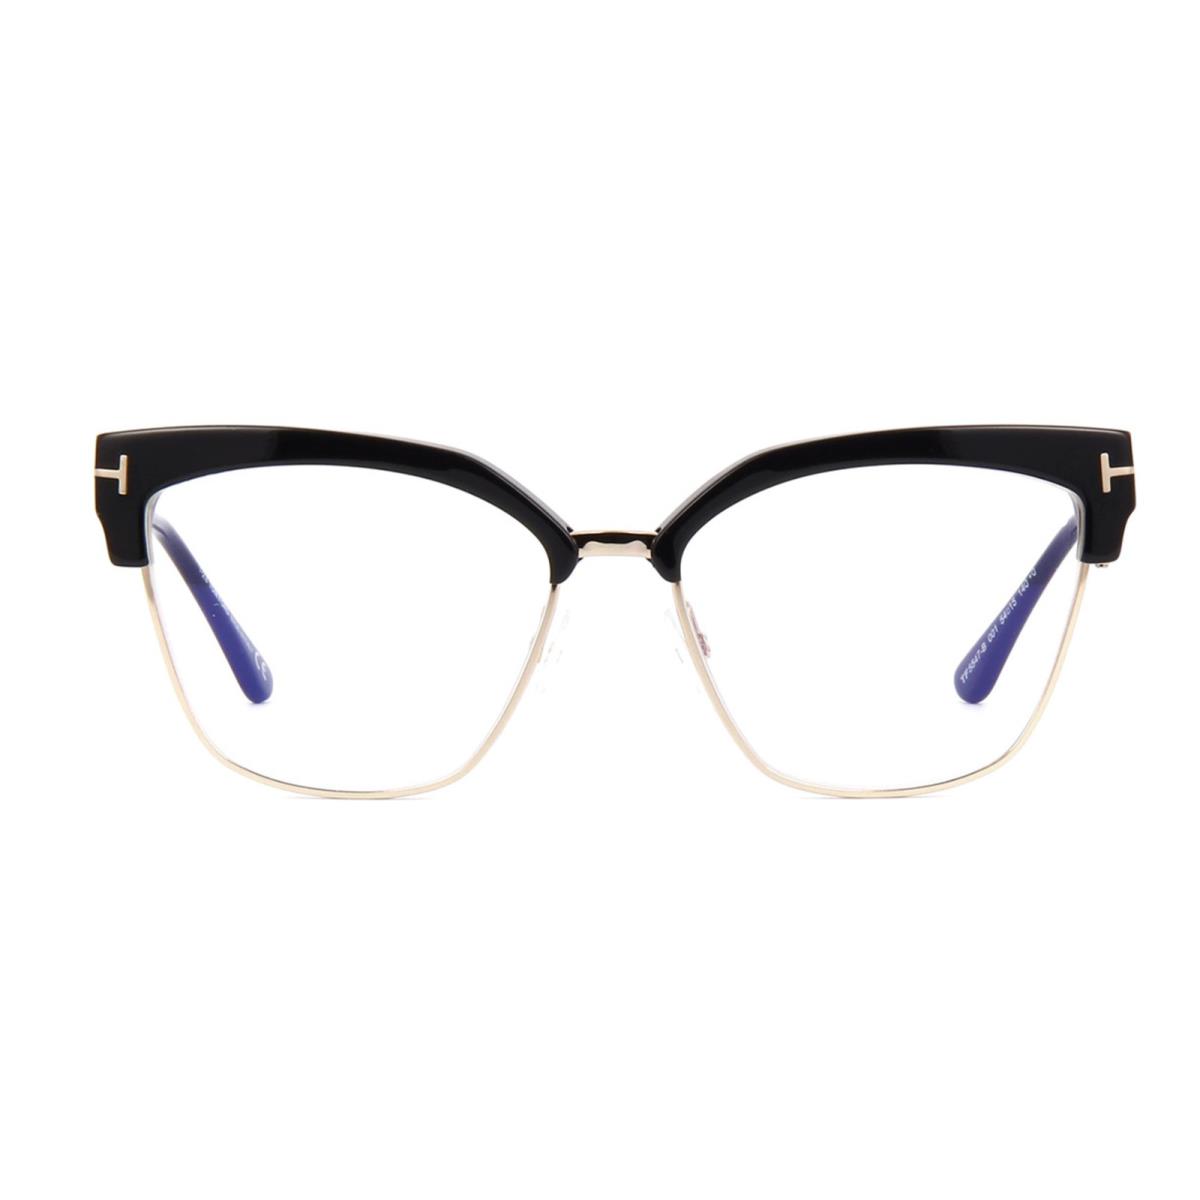 Tom Ford FT5547-B 001 Eyeglasses Shiny Black Frame 54 Mm